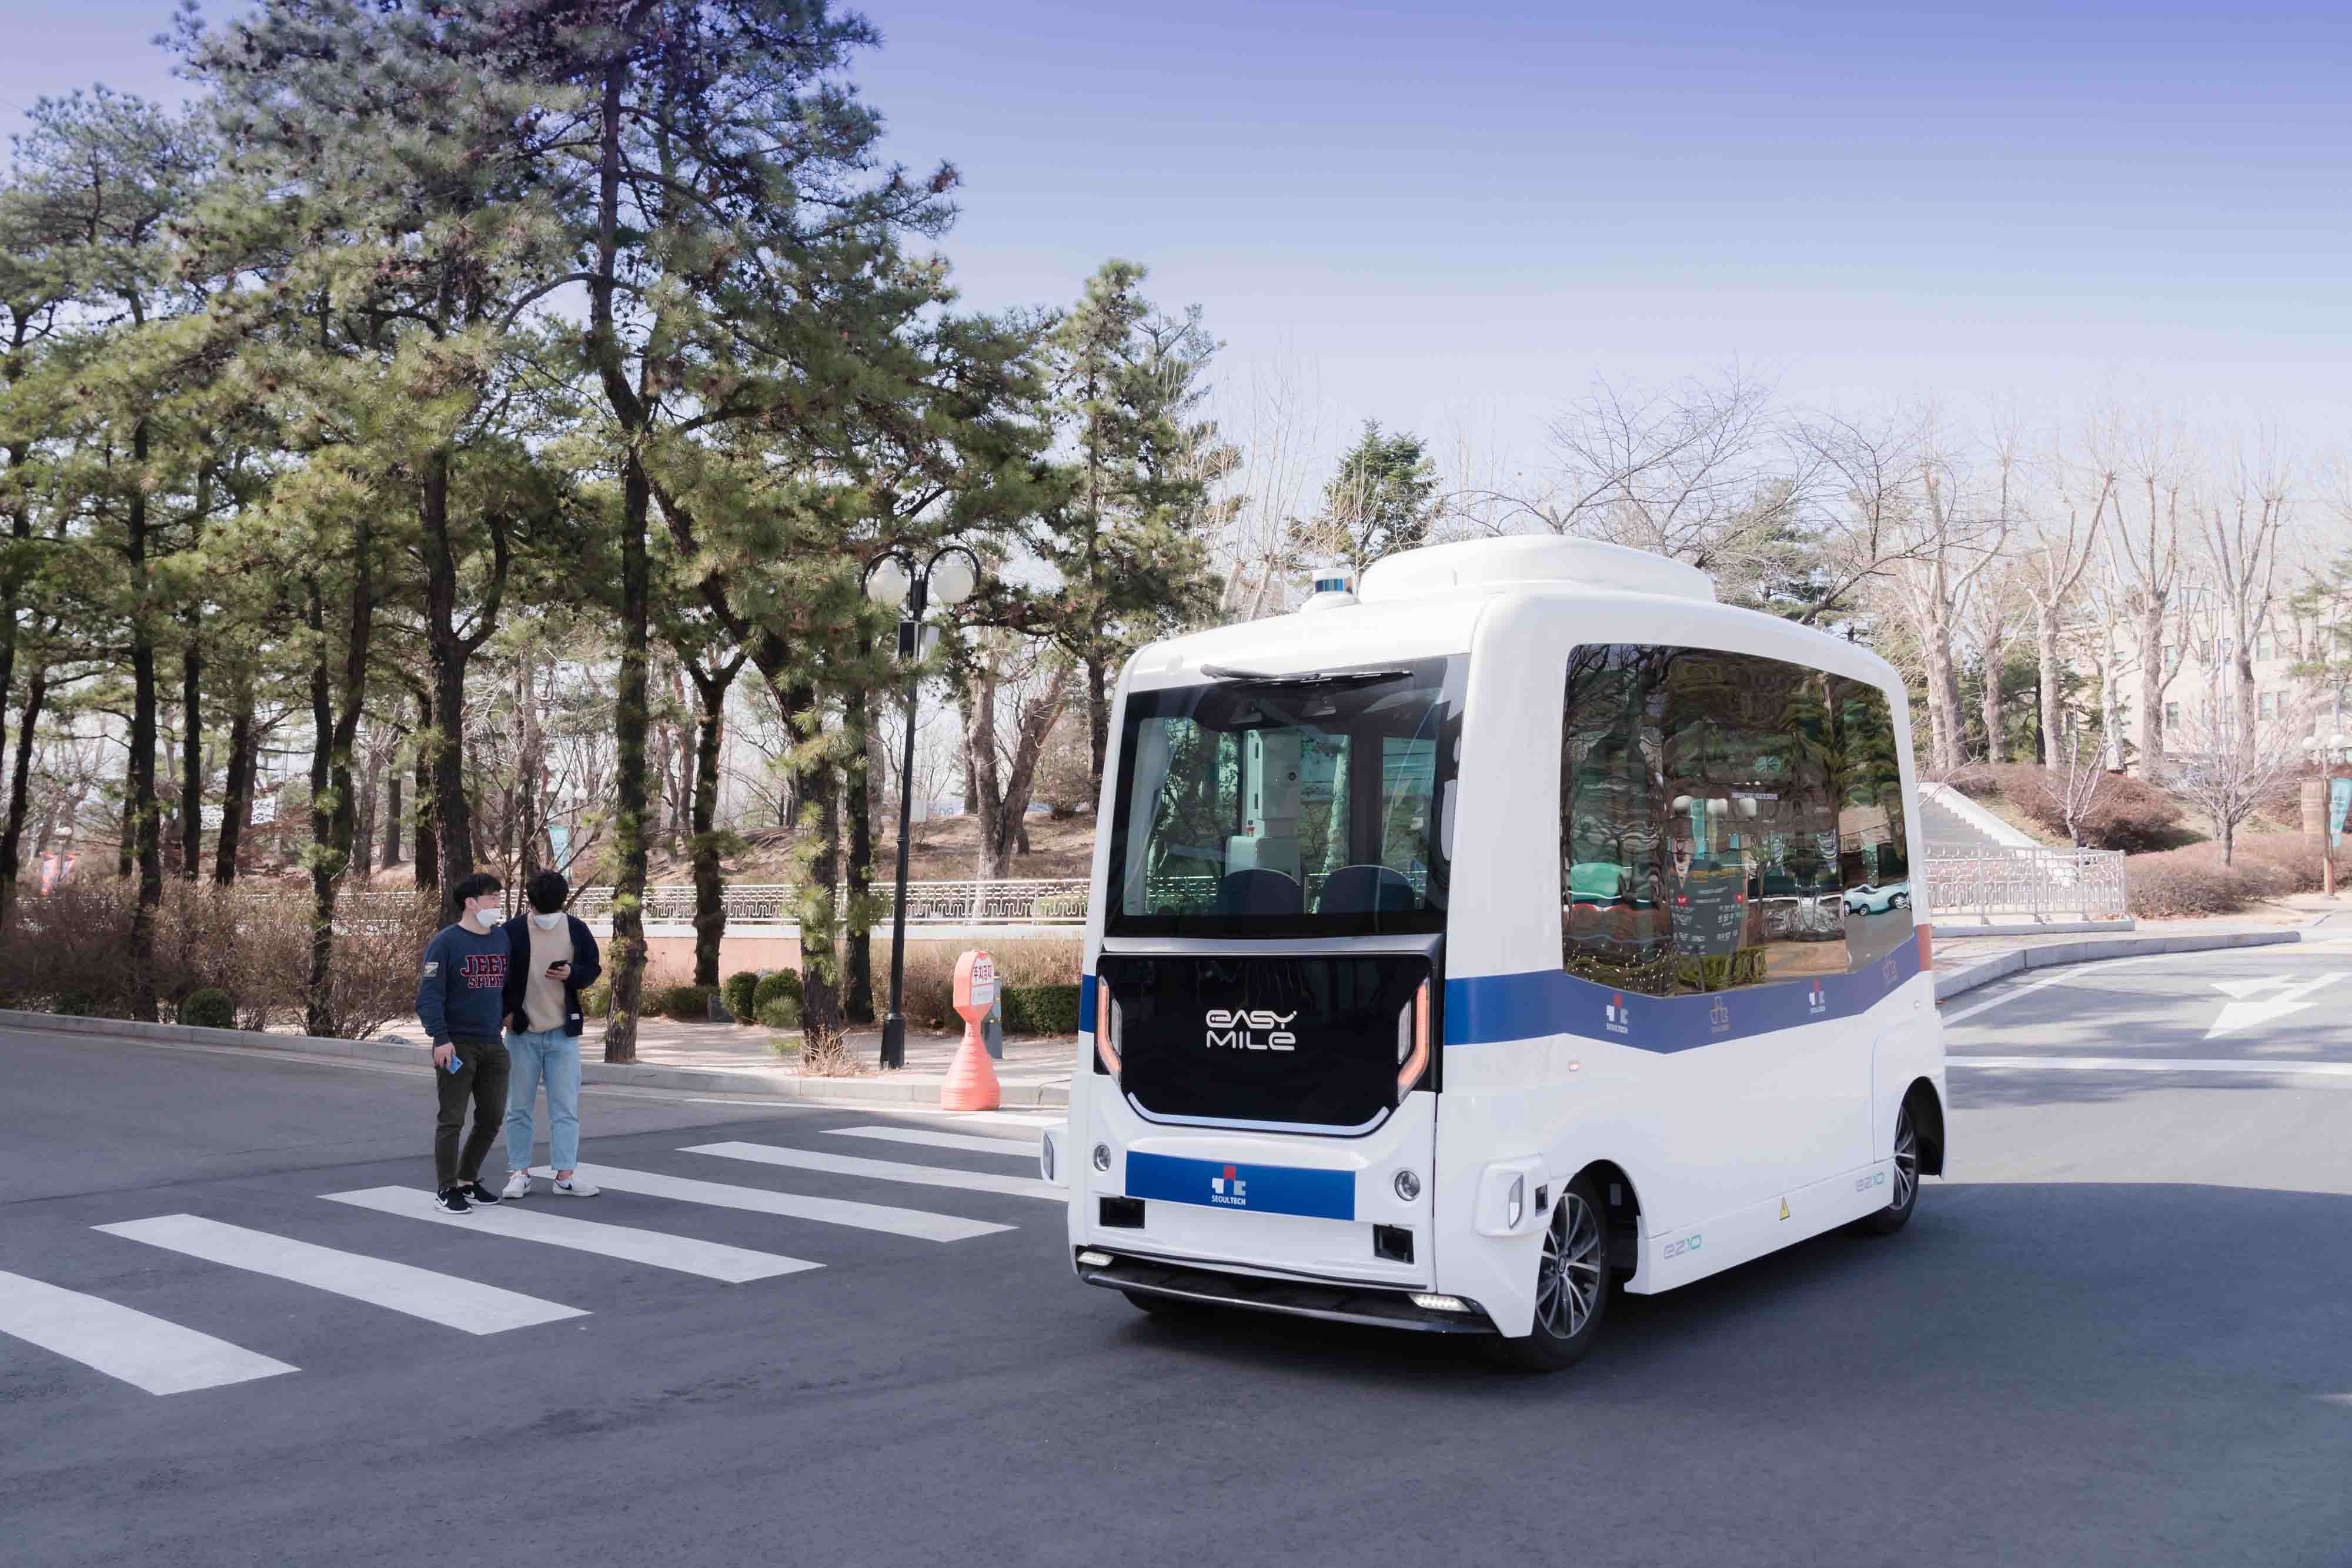 Южная Корея запустит пассажирские перевозки на беспилотных автобусах в 2025 году, а в 2040 году появится трубопроводный транспорт